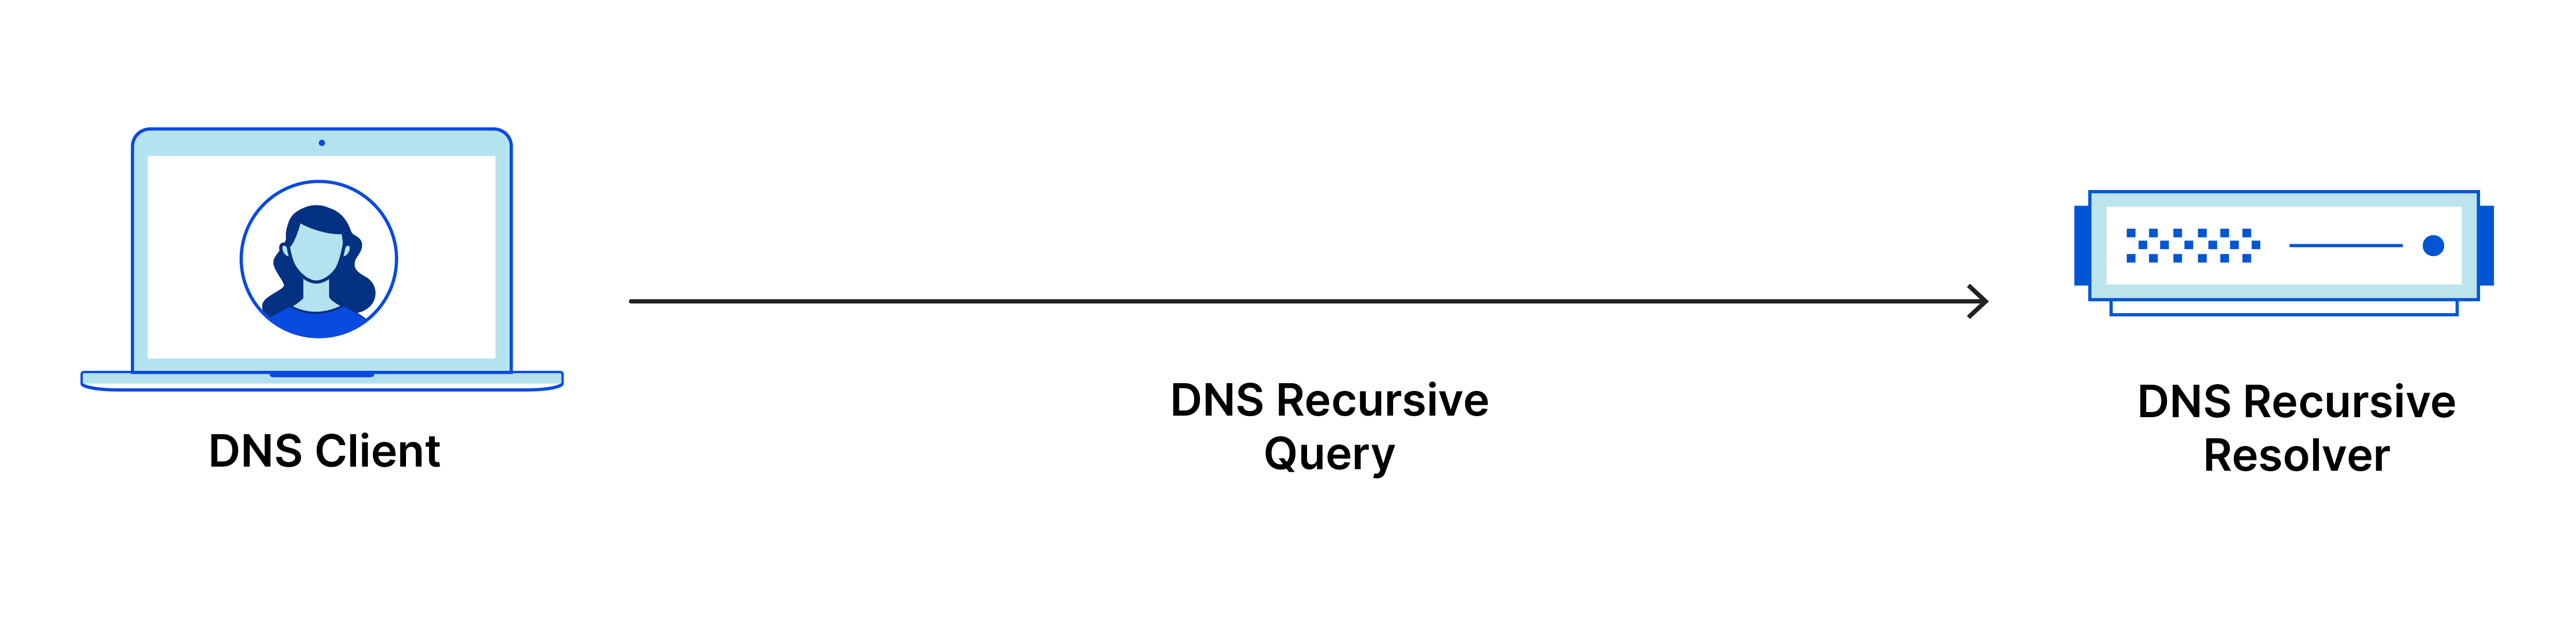 Rekursive DNS-Abfrage geht vom DNS-Client zum rekursiven DNS-Resolver